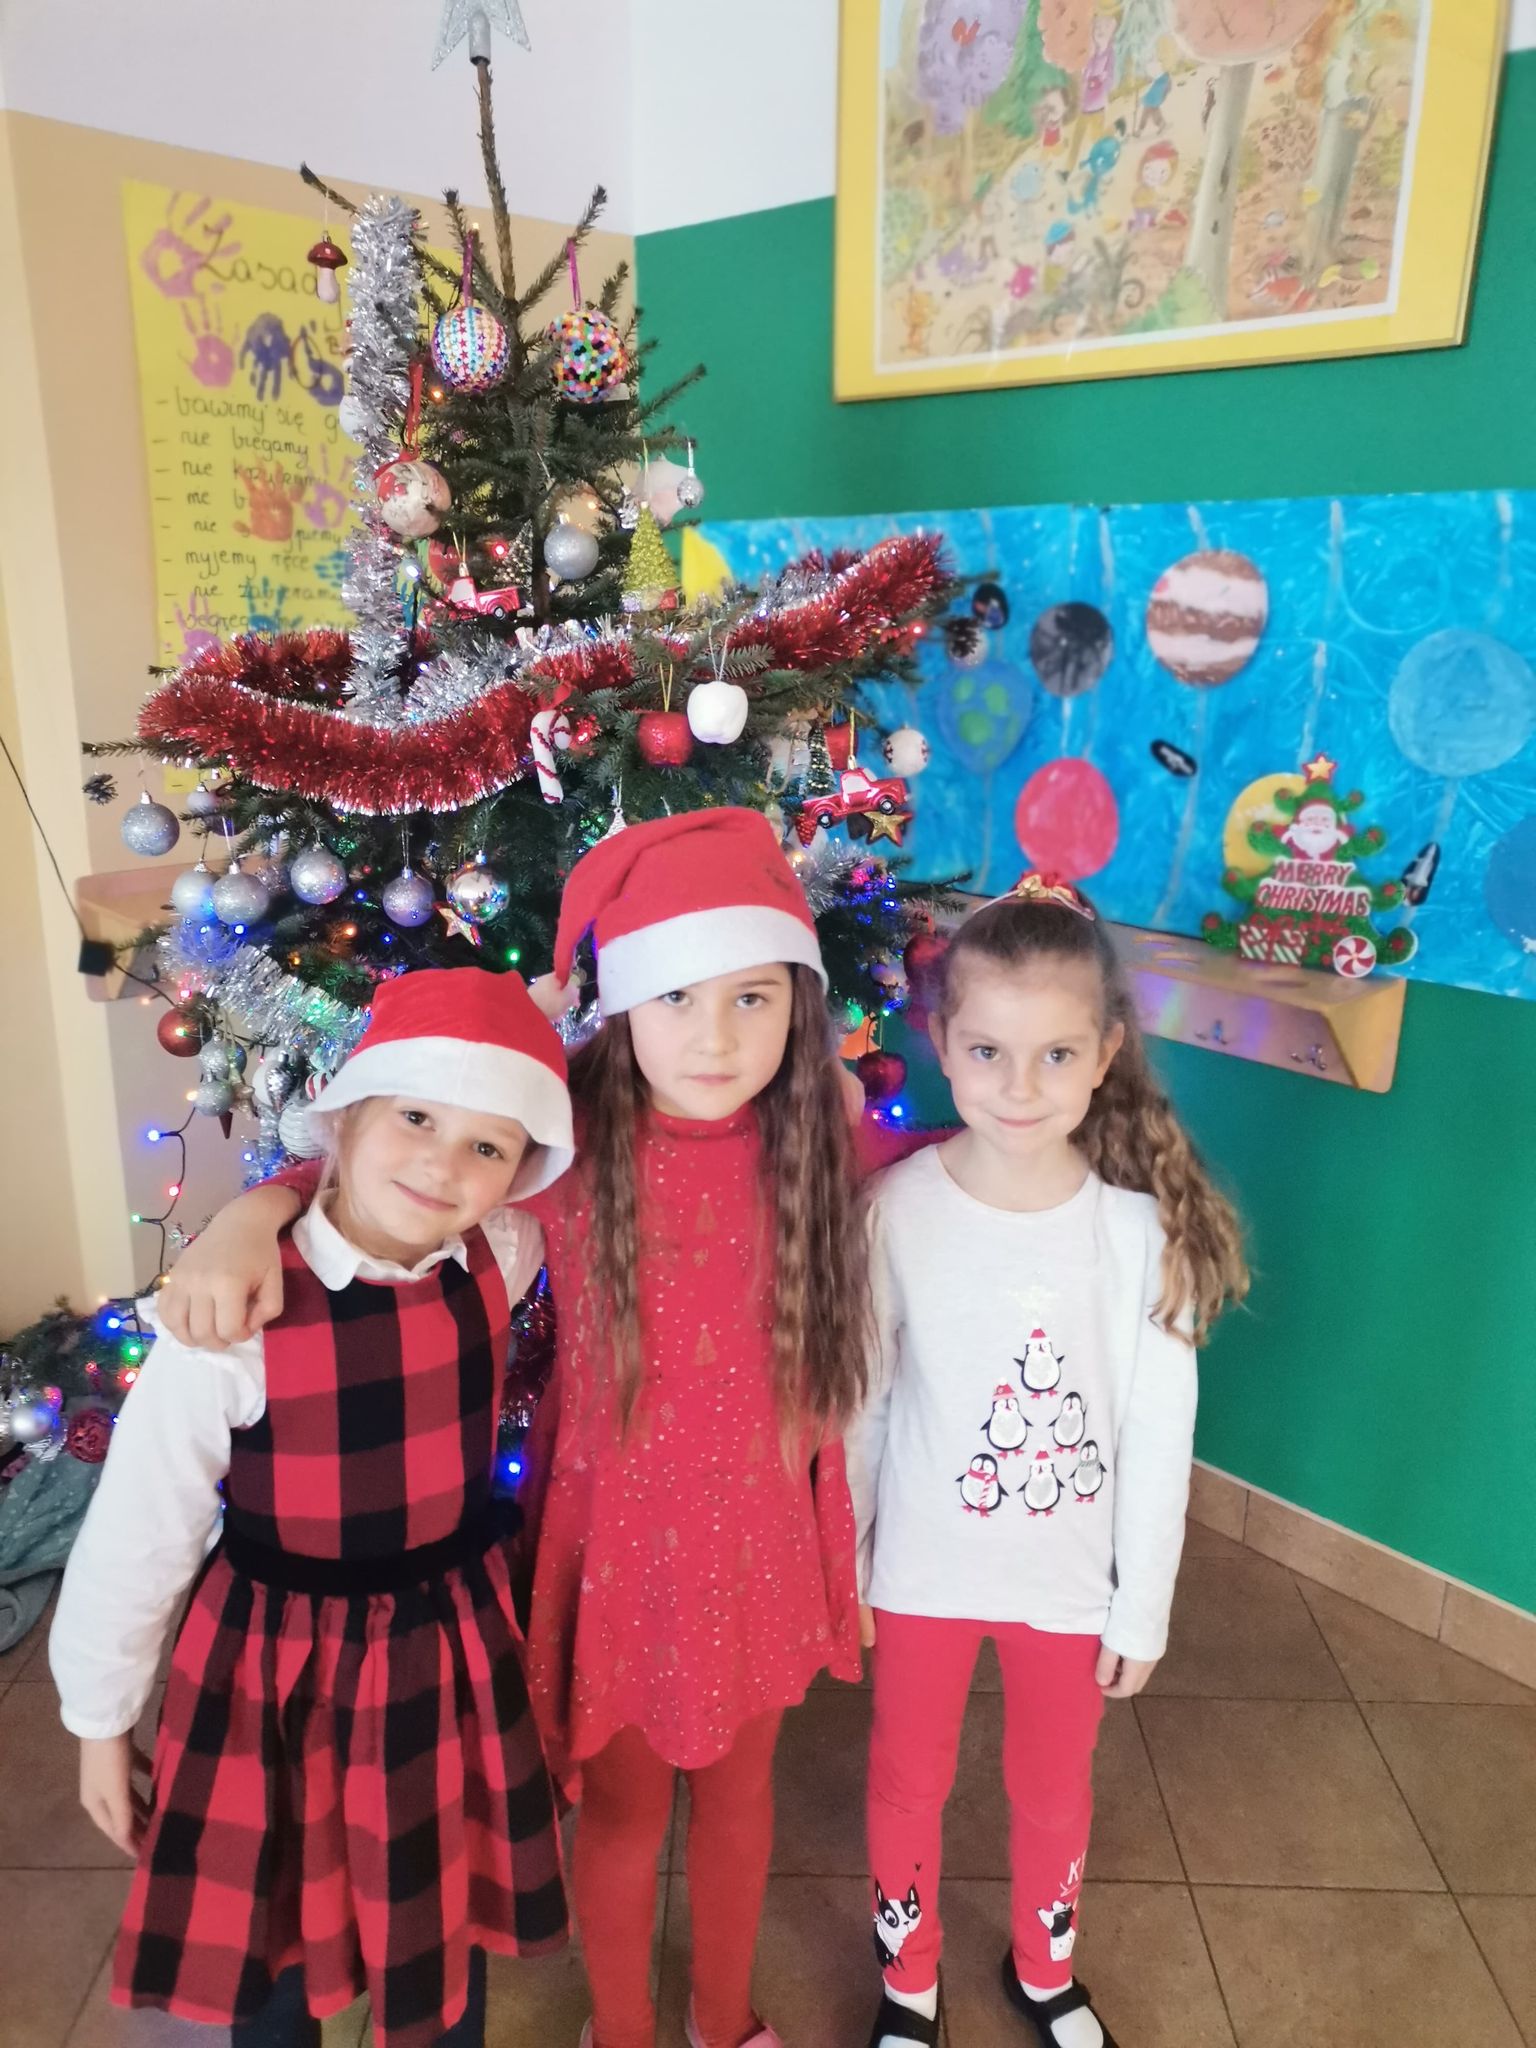 Trzy dziewczynki z czapkach św. Mikołaja stoją przed udekorowaną choinką